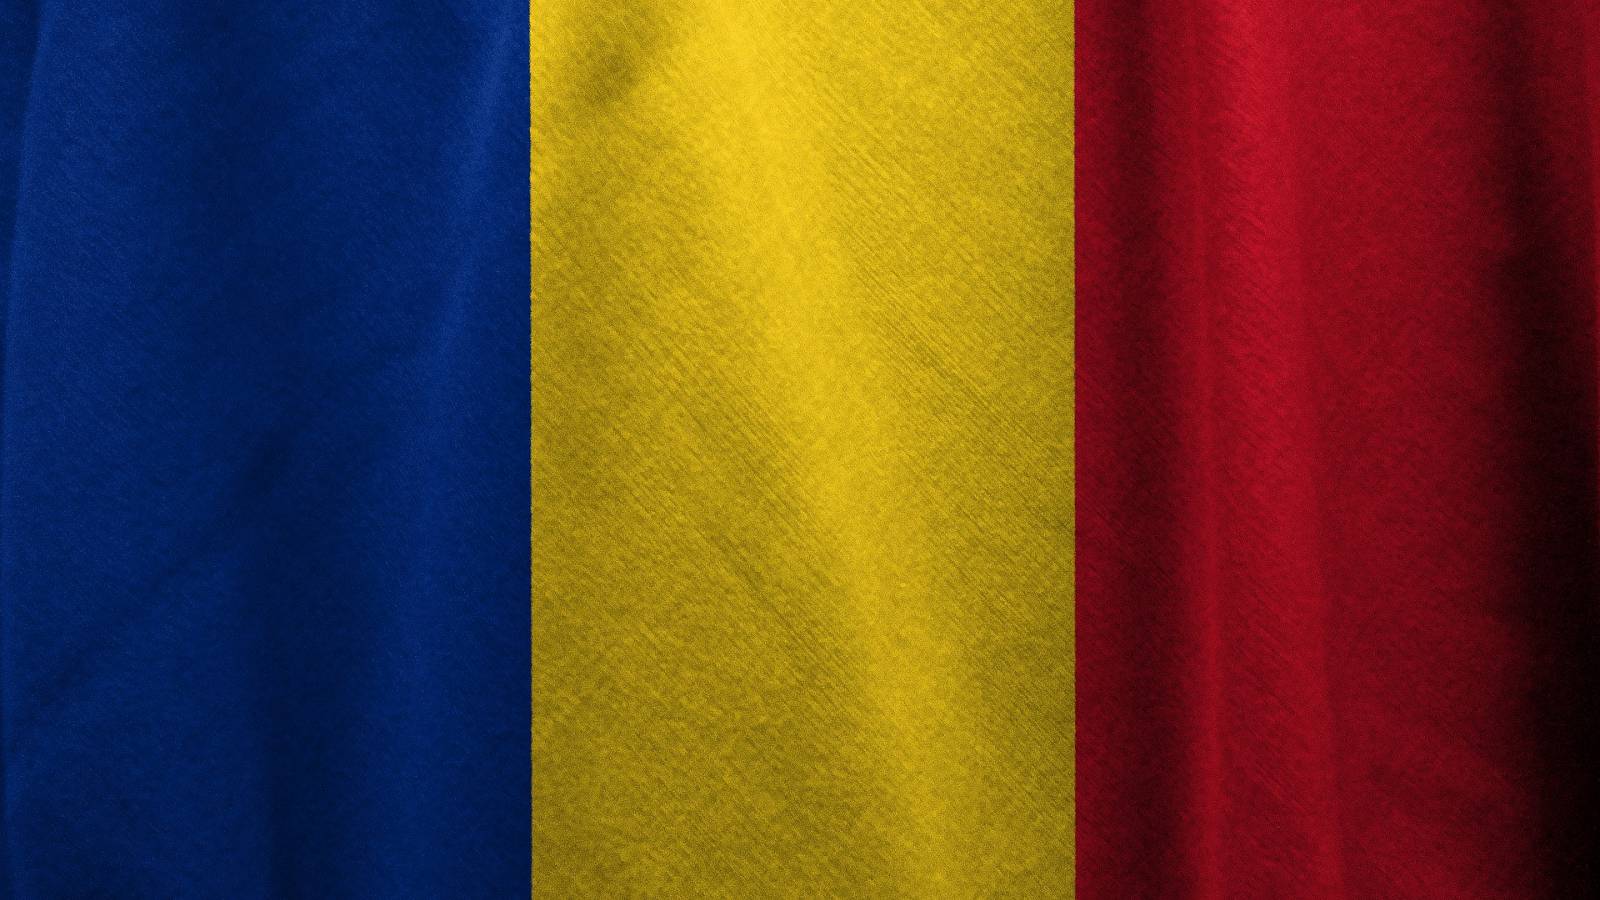 ¿Cuánto han disminuido los nuevos casos de COVID-19 en Rumanía en los últimos siete días?